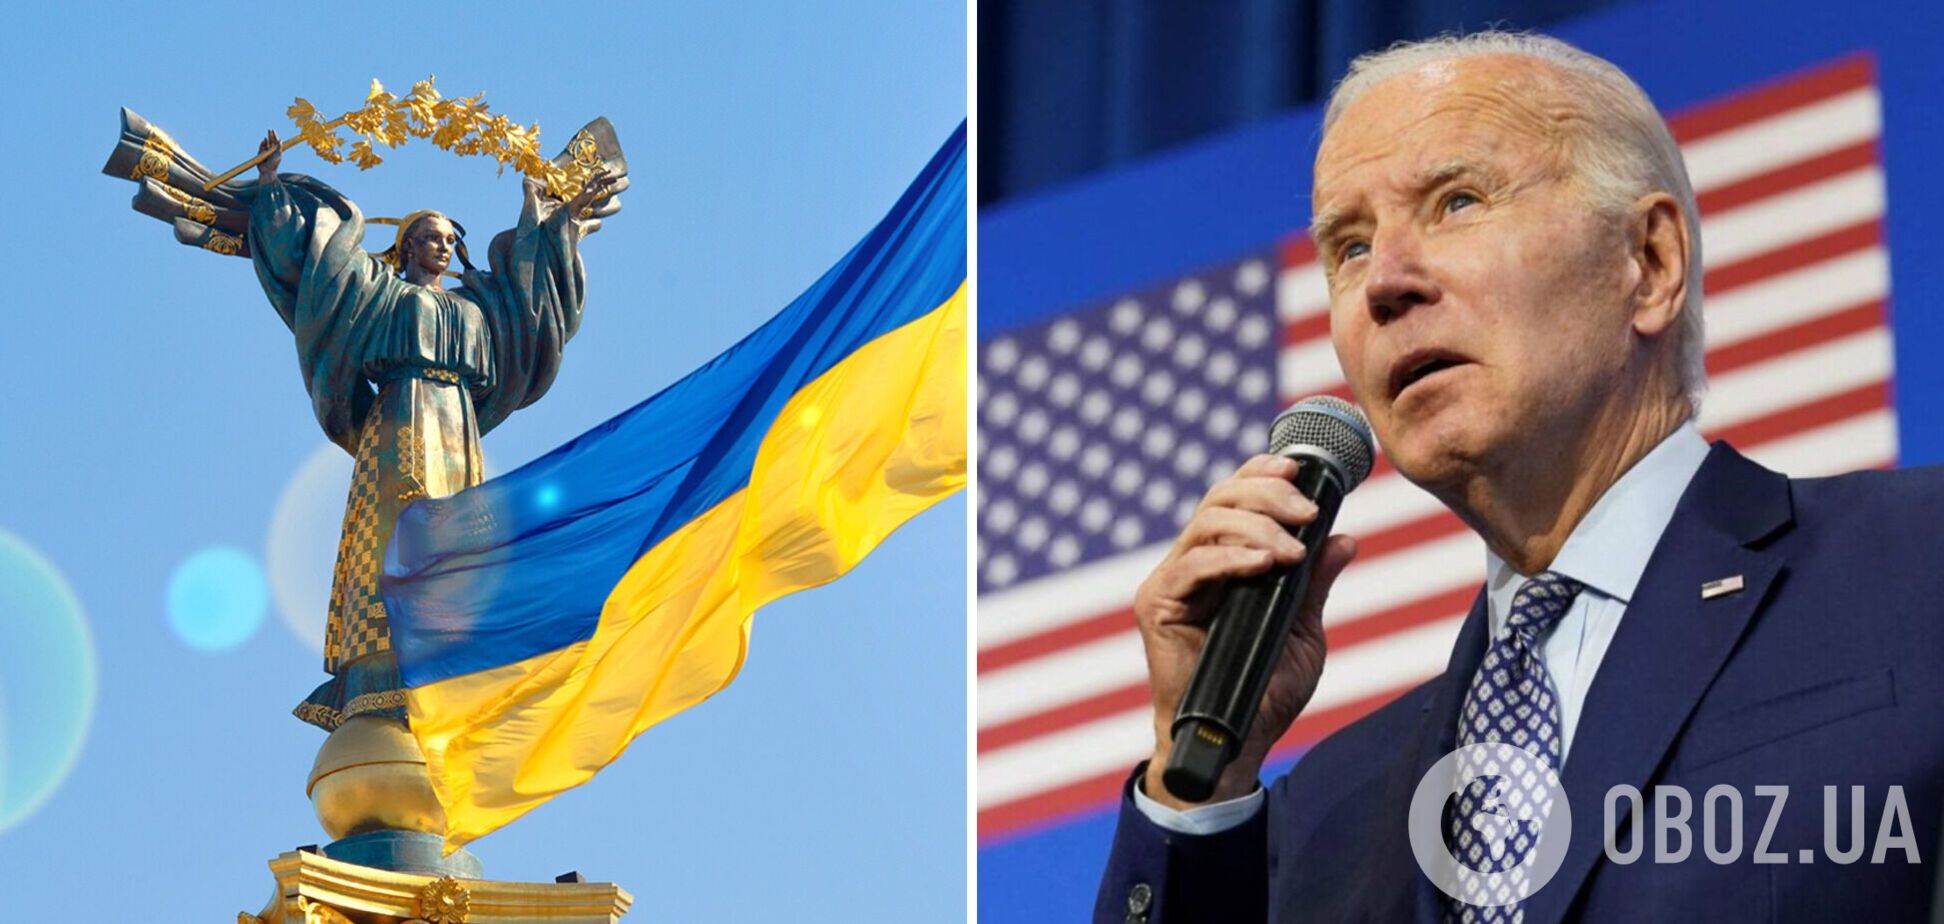 'Наше единство не сломить': Байден пообещал поддерживать Украину и продолжать давить на РФ